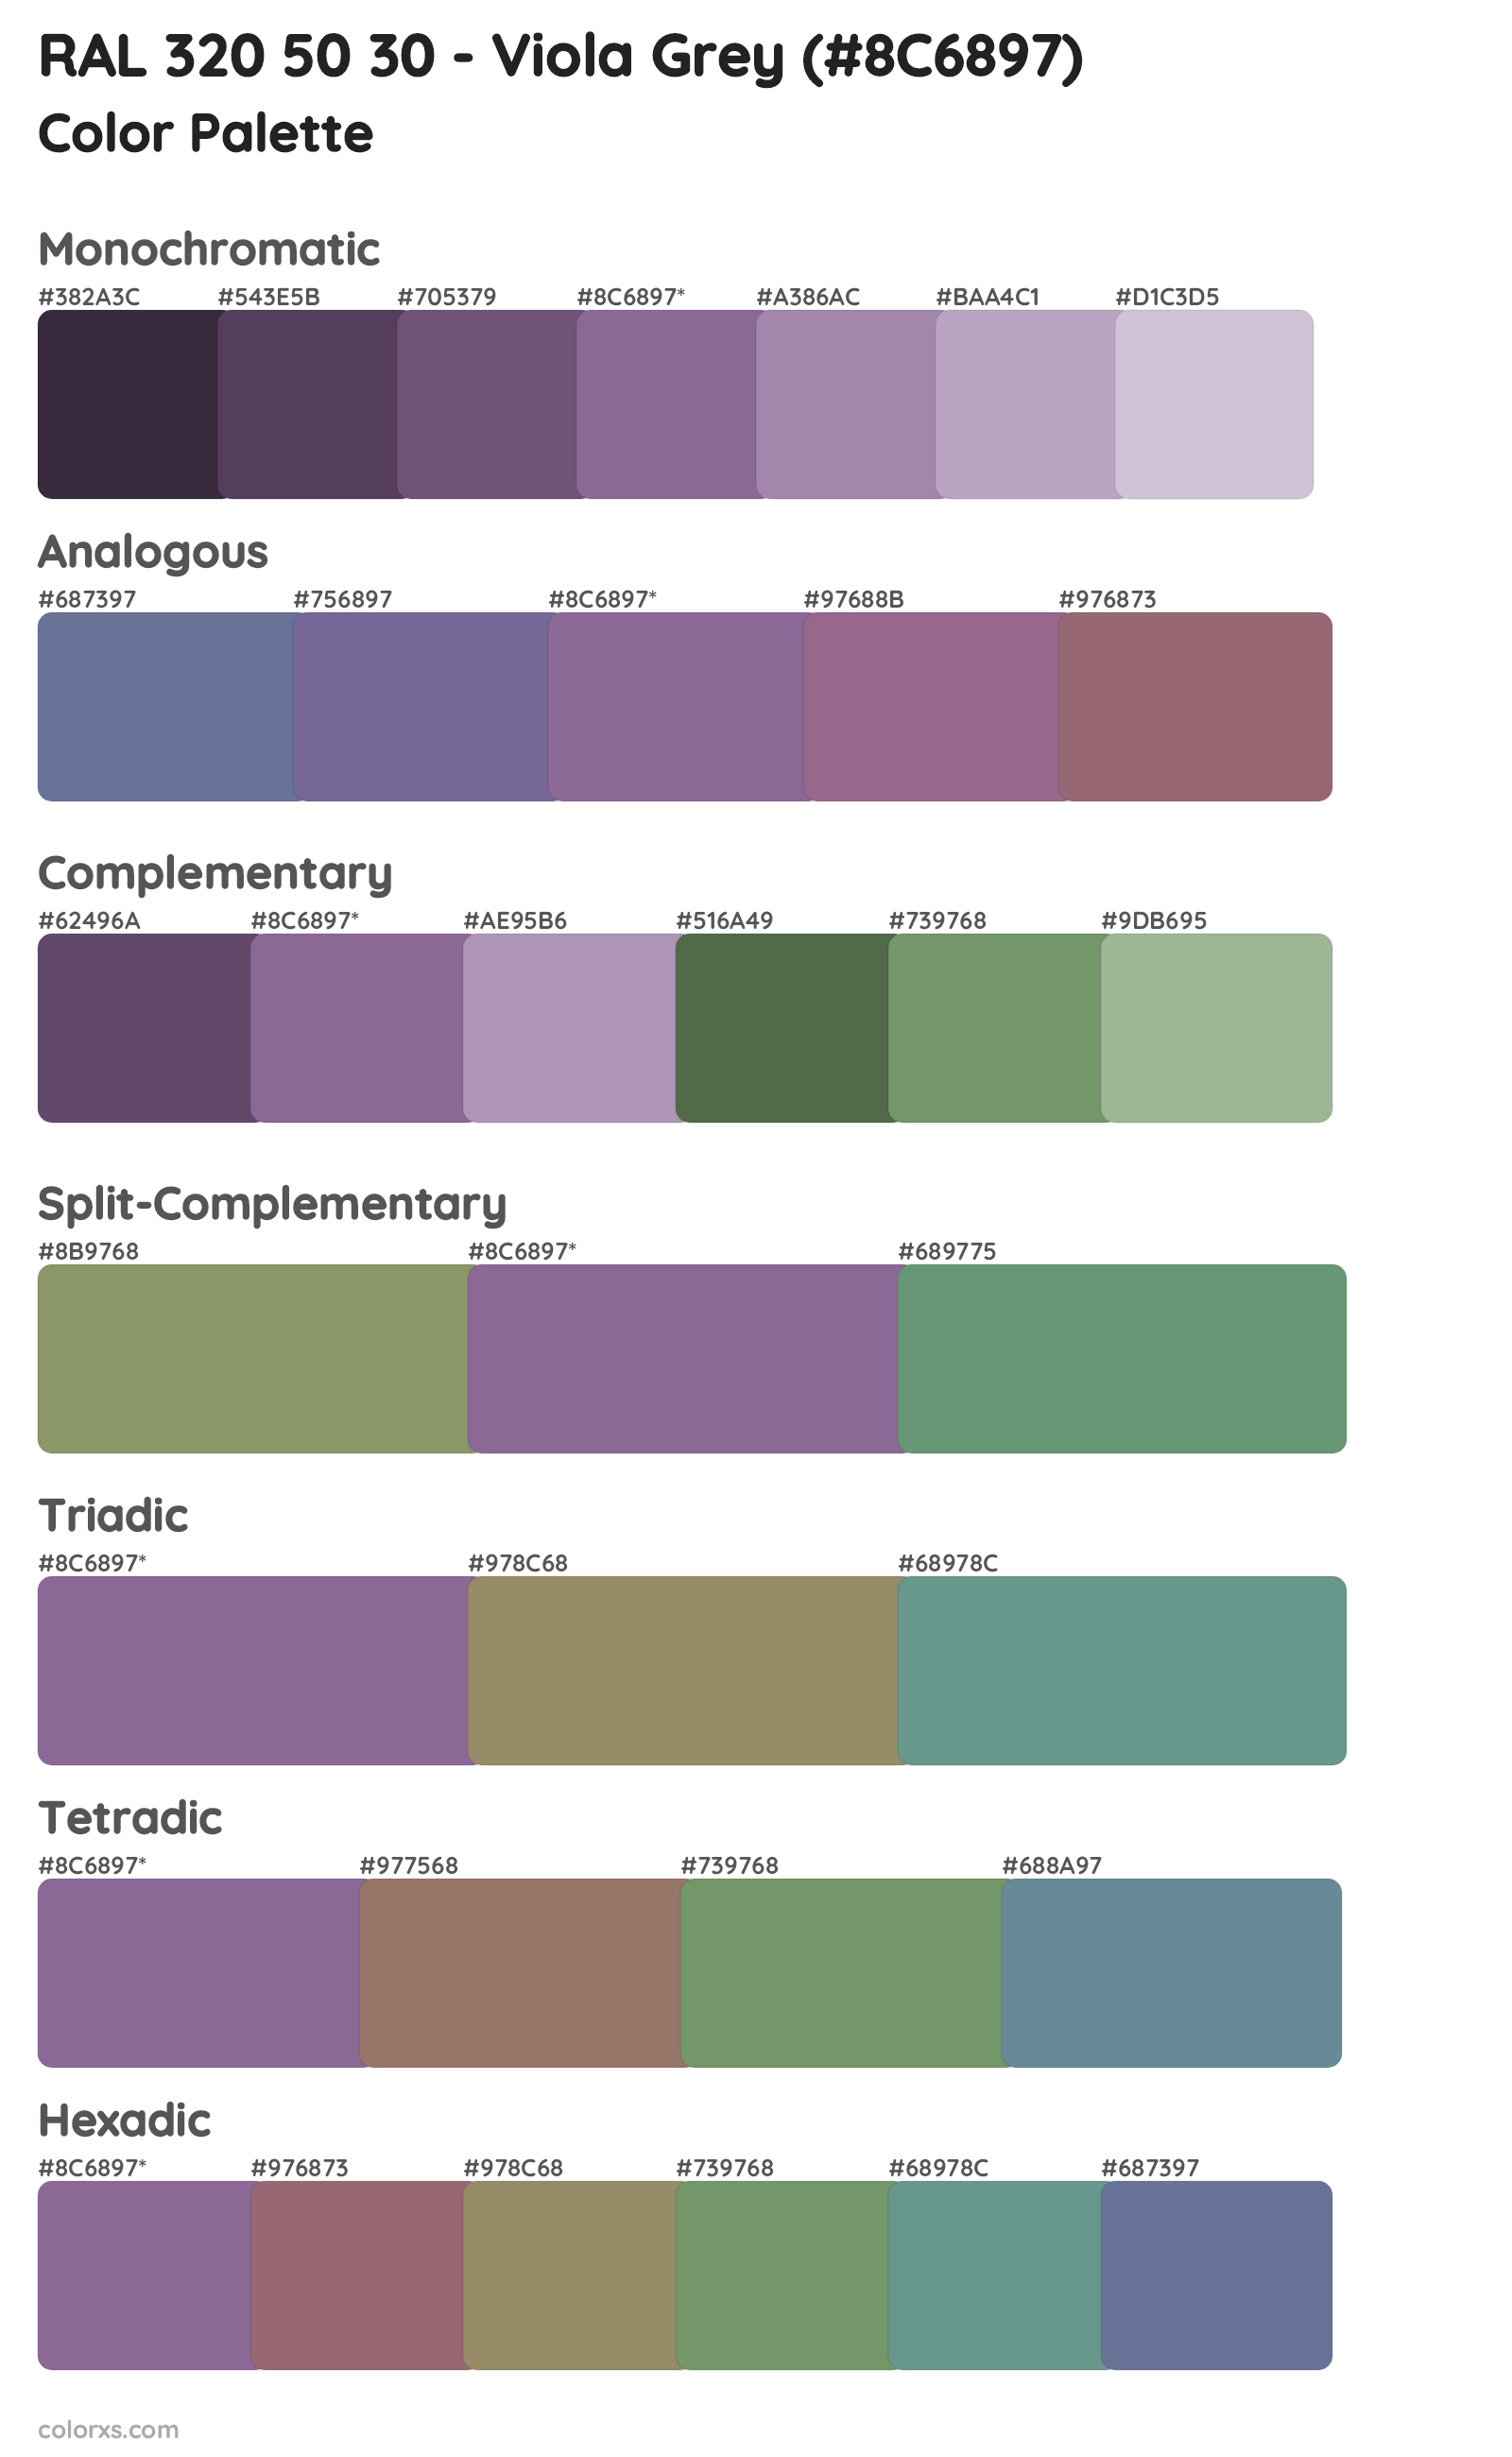 RAL 320 50 30 - Viola Grey Color Scheme Palettes